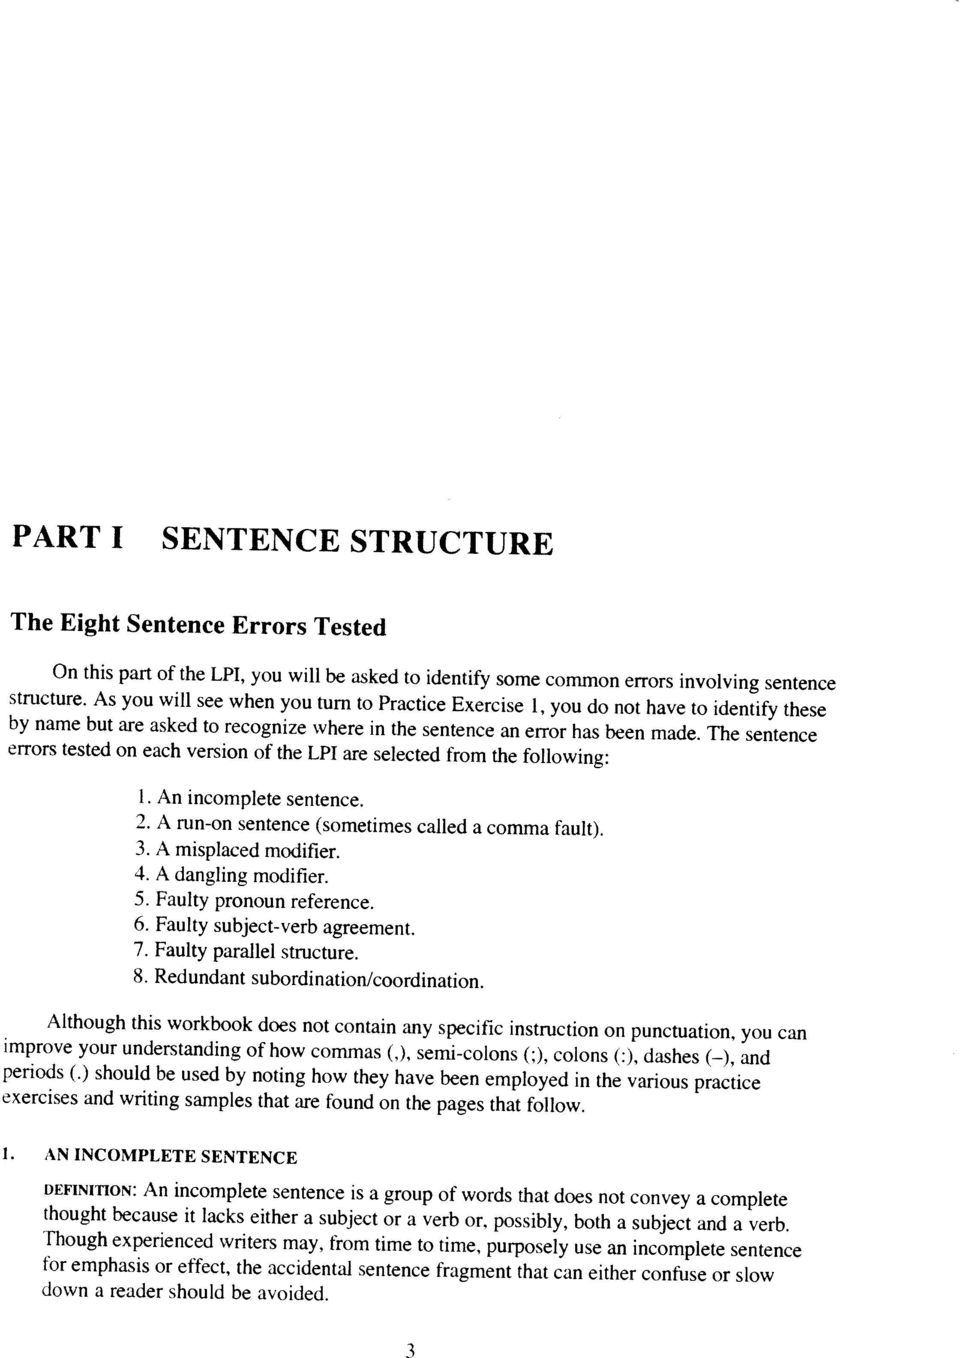 part i sentence structure - pdf